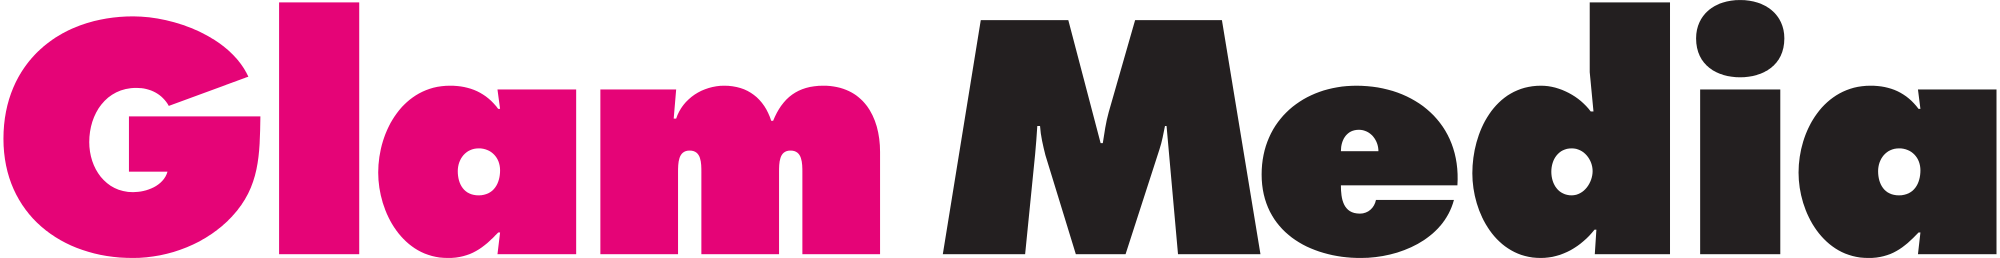 Glam_Media_logo.svg.png